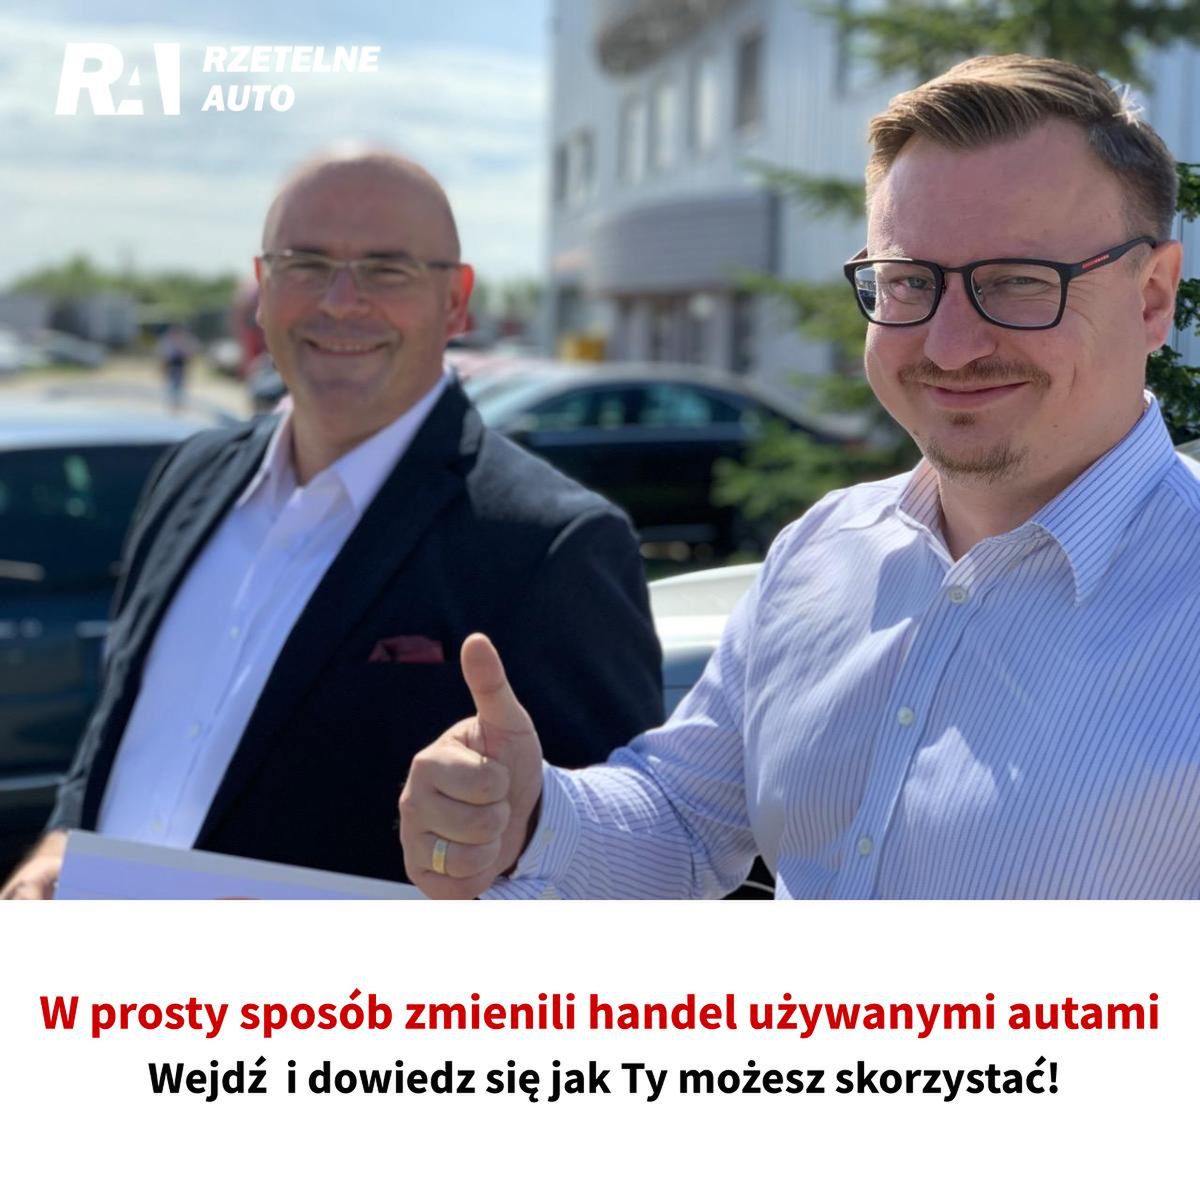 RzetelneAuto.pl wrzuca kolejny bieg, stając się częścią bogatej oferty medialnej serwisu Wirtualna Polska!